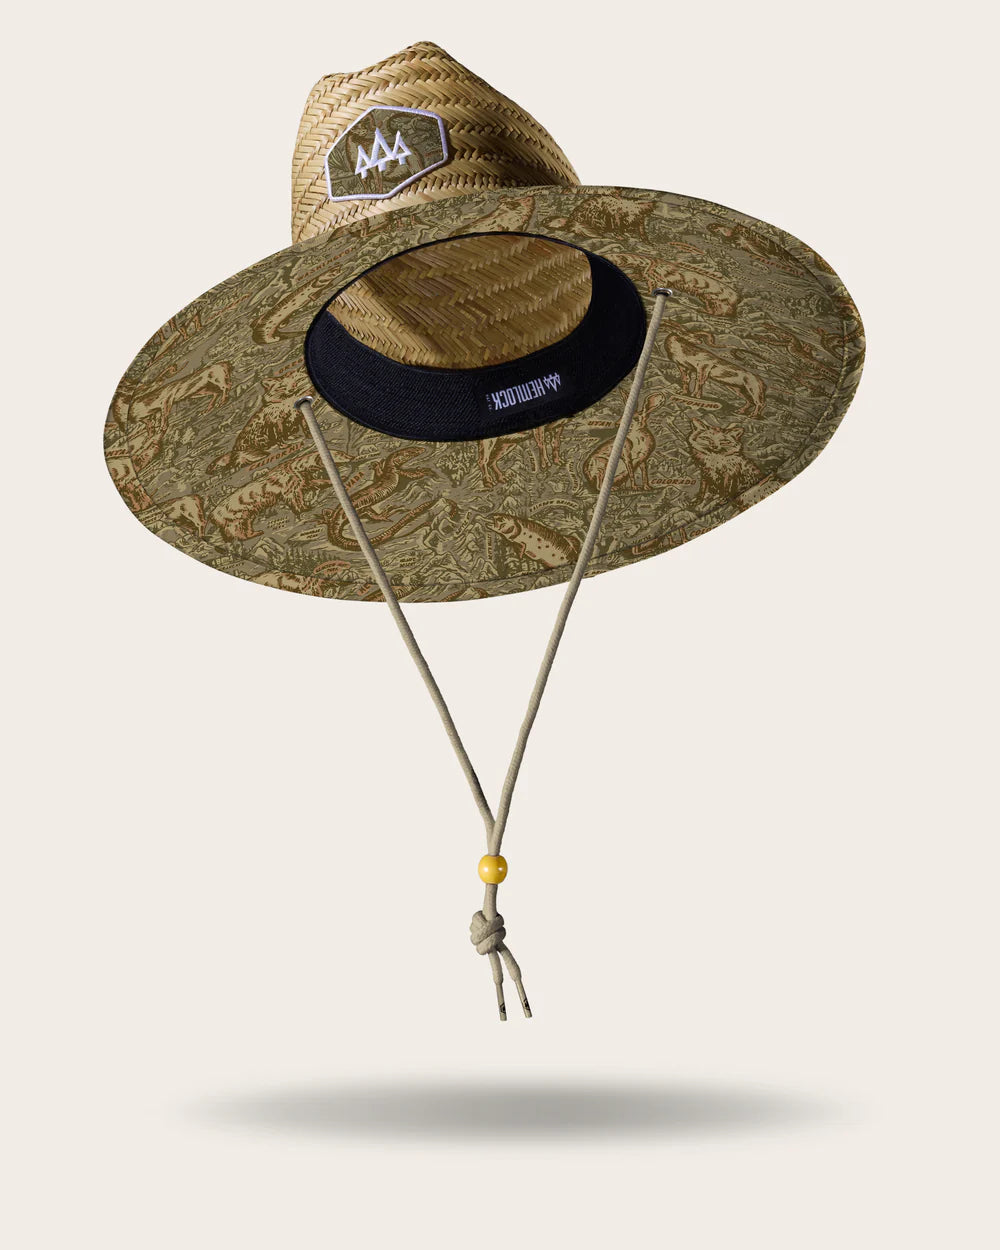 Hemlock Wildwood Straw Hat